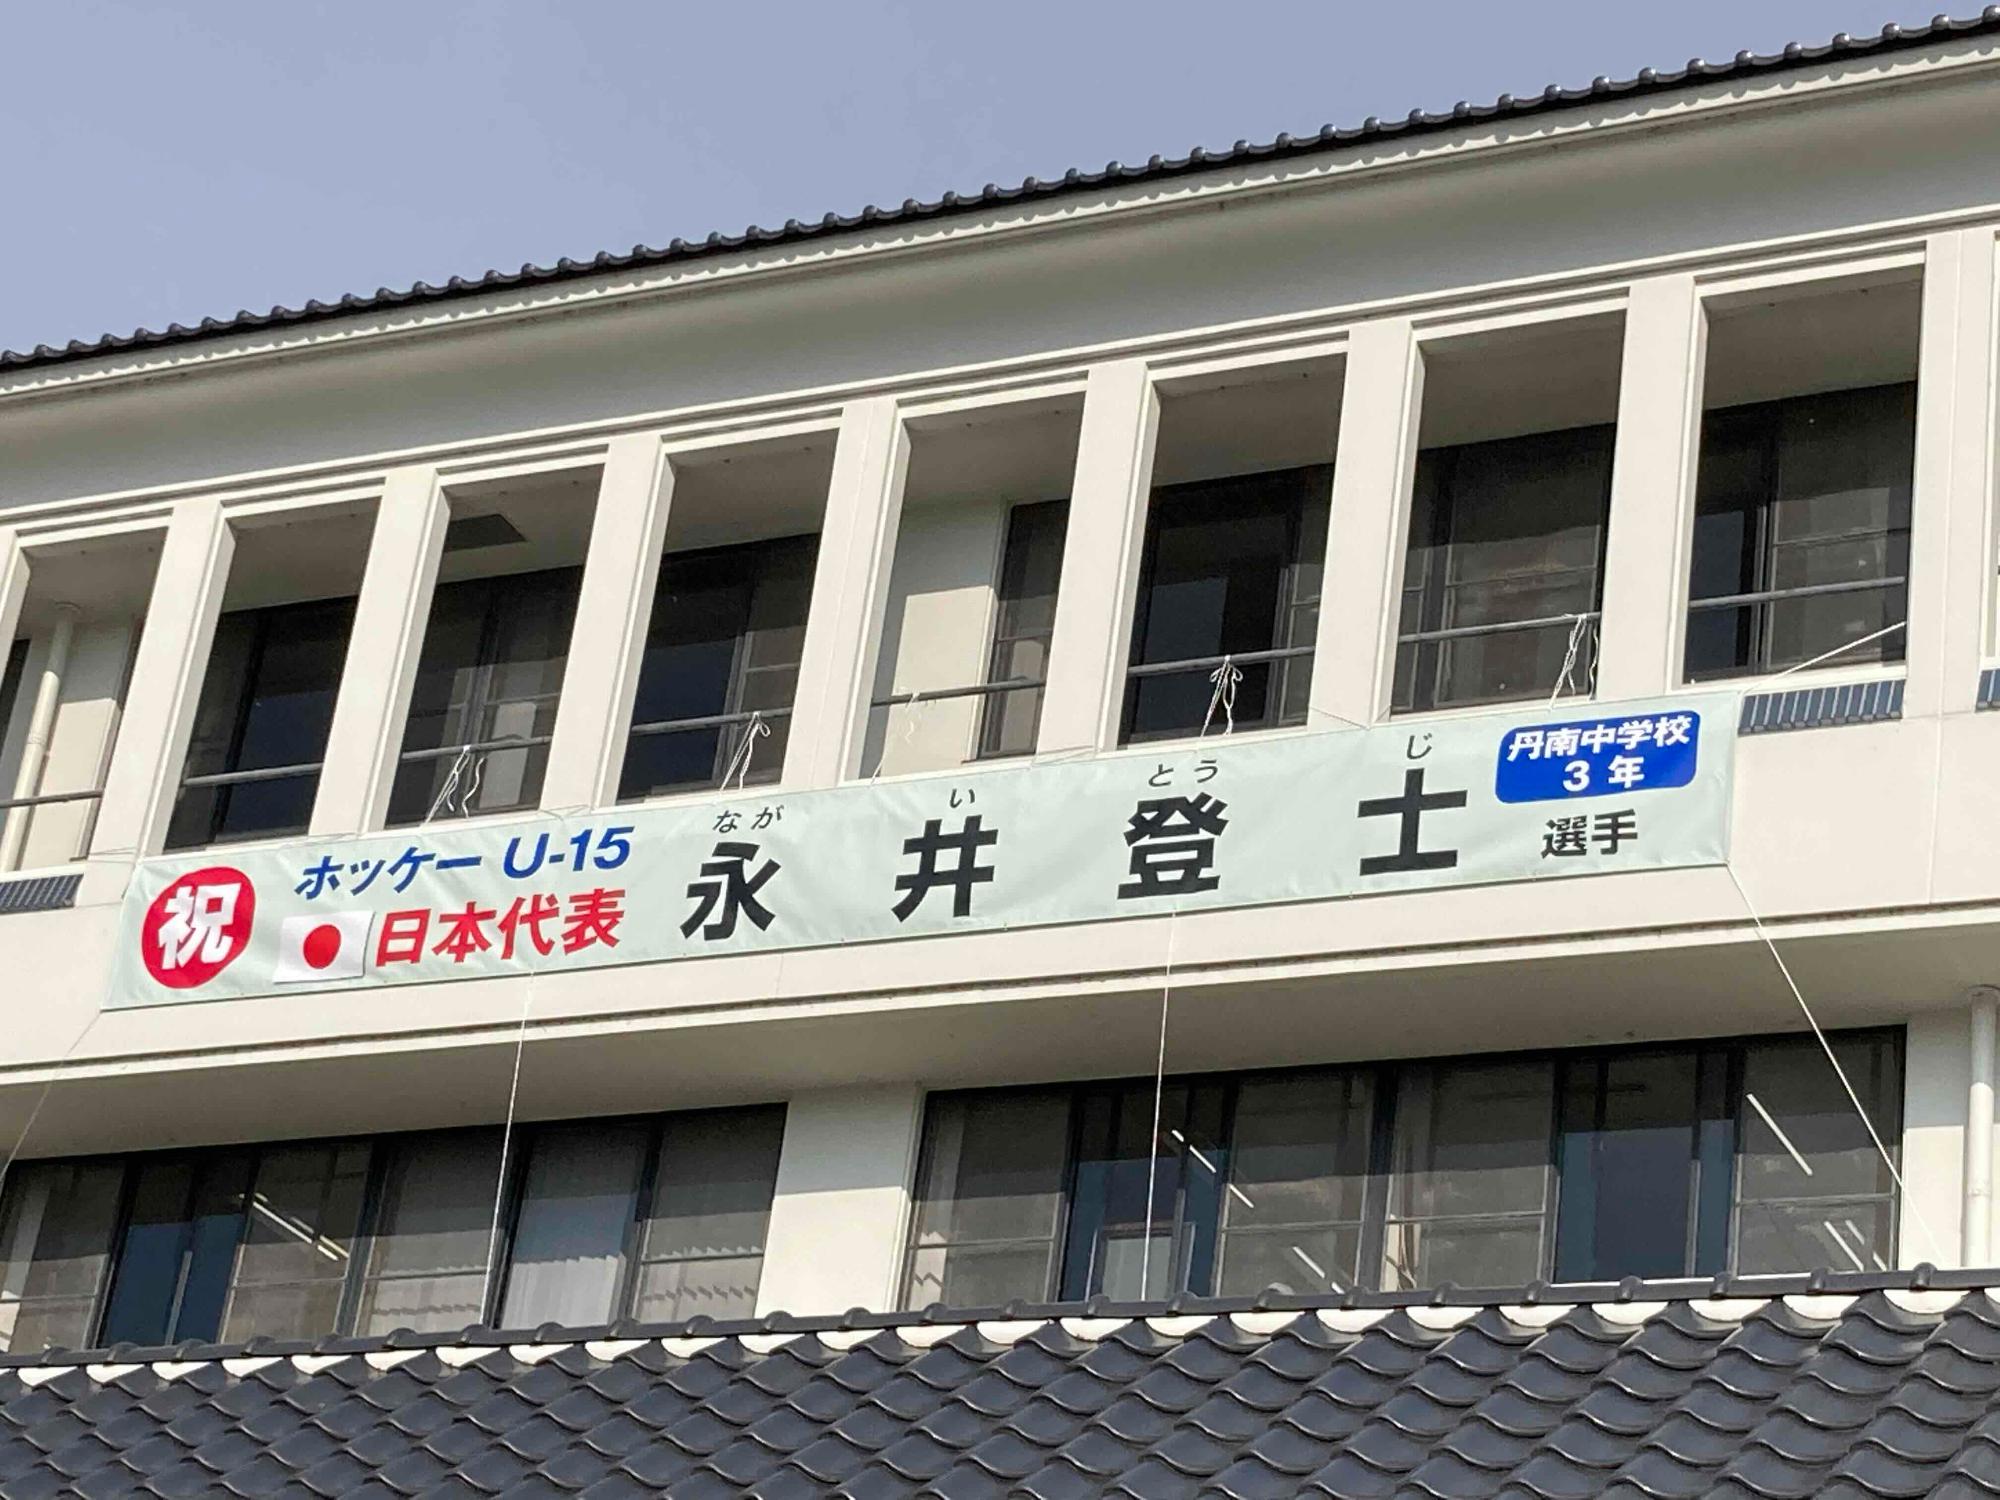 市役所庁舎に、ホッケーU15の代表になった永井登士君の横断幕が掲示してある